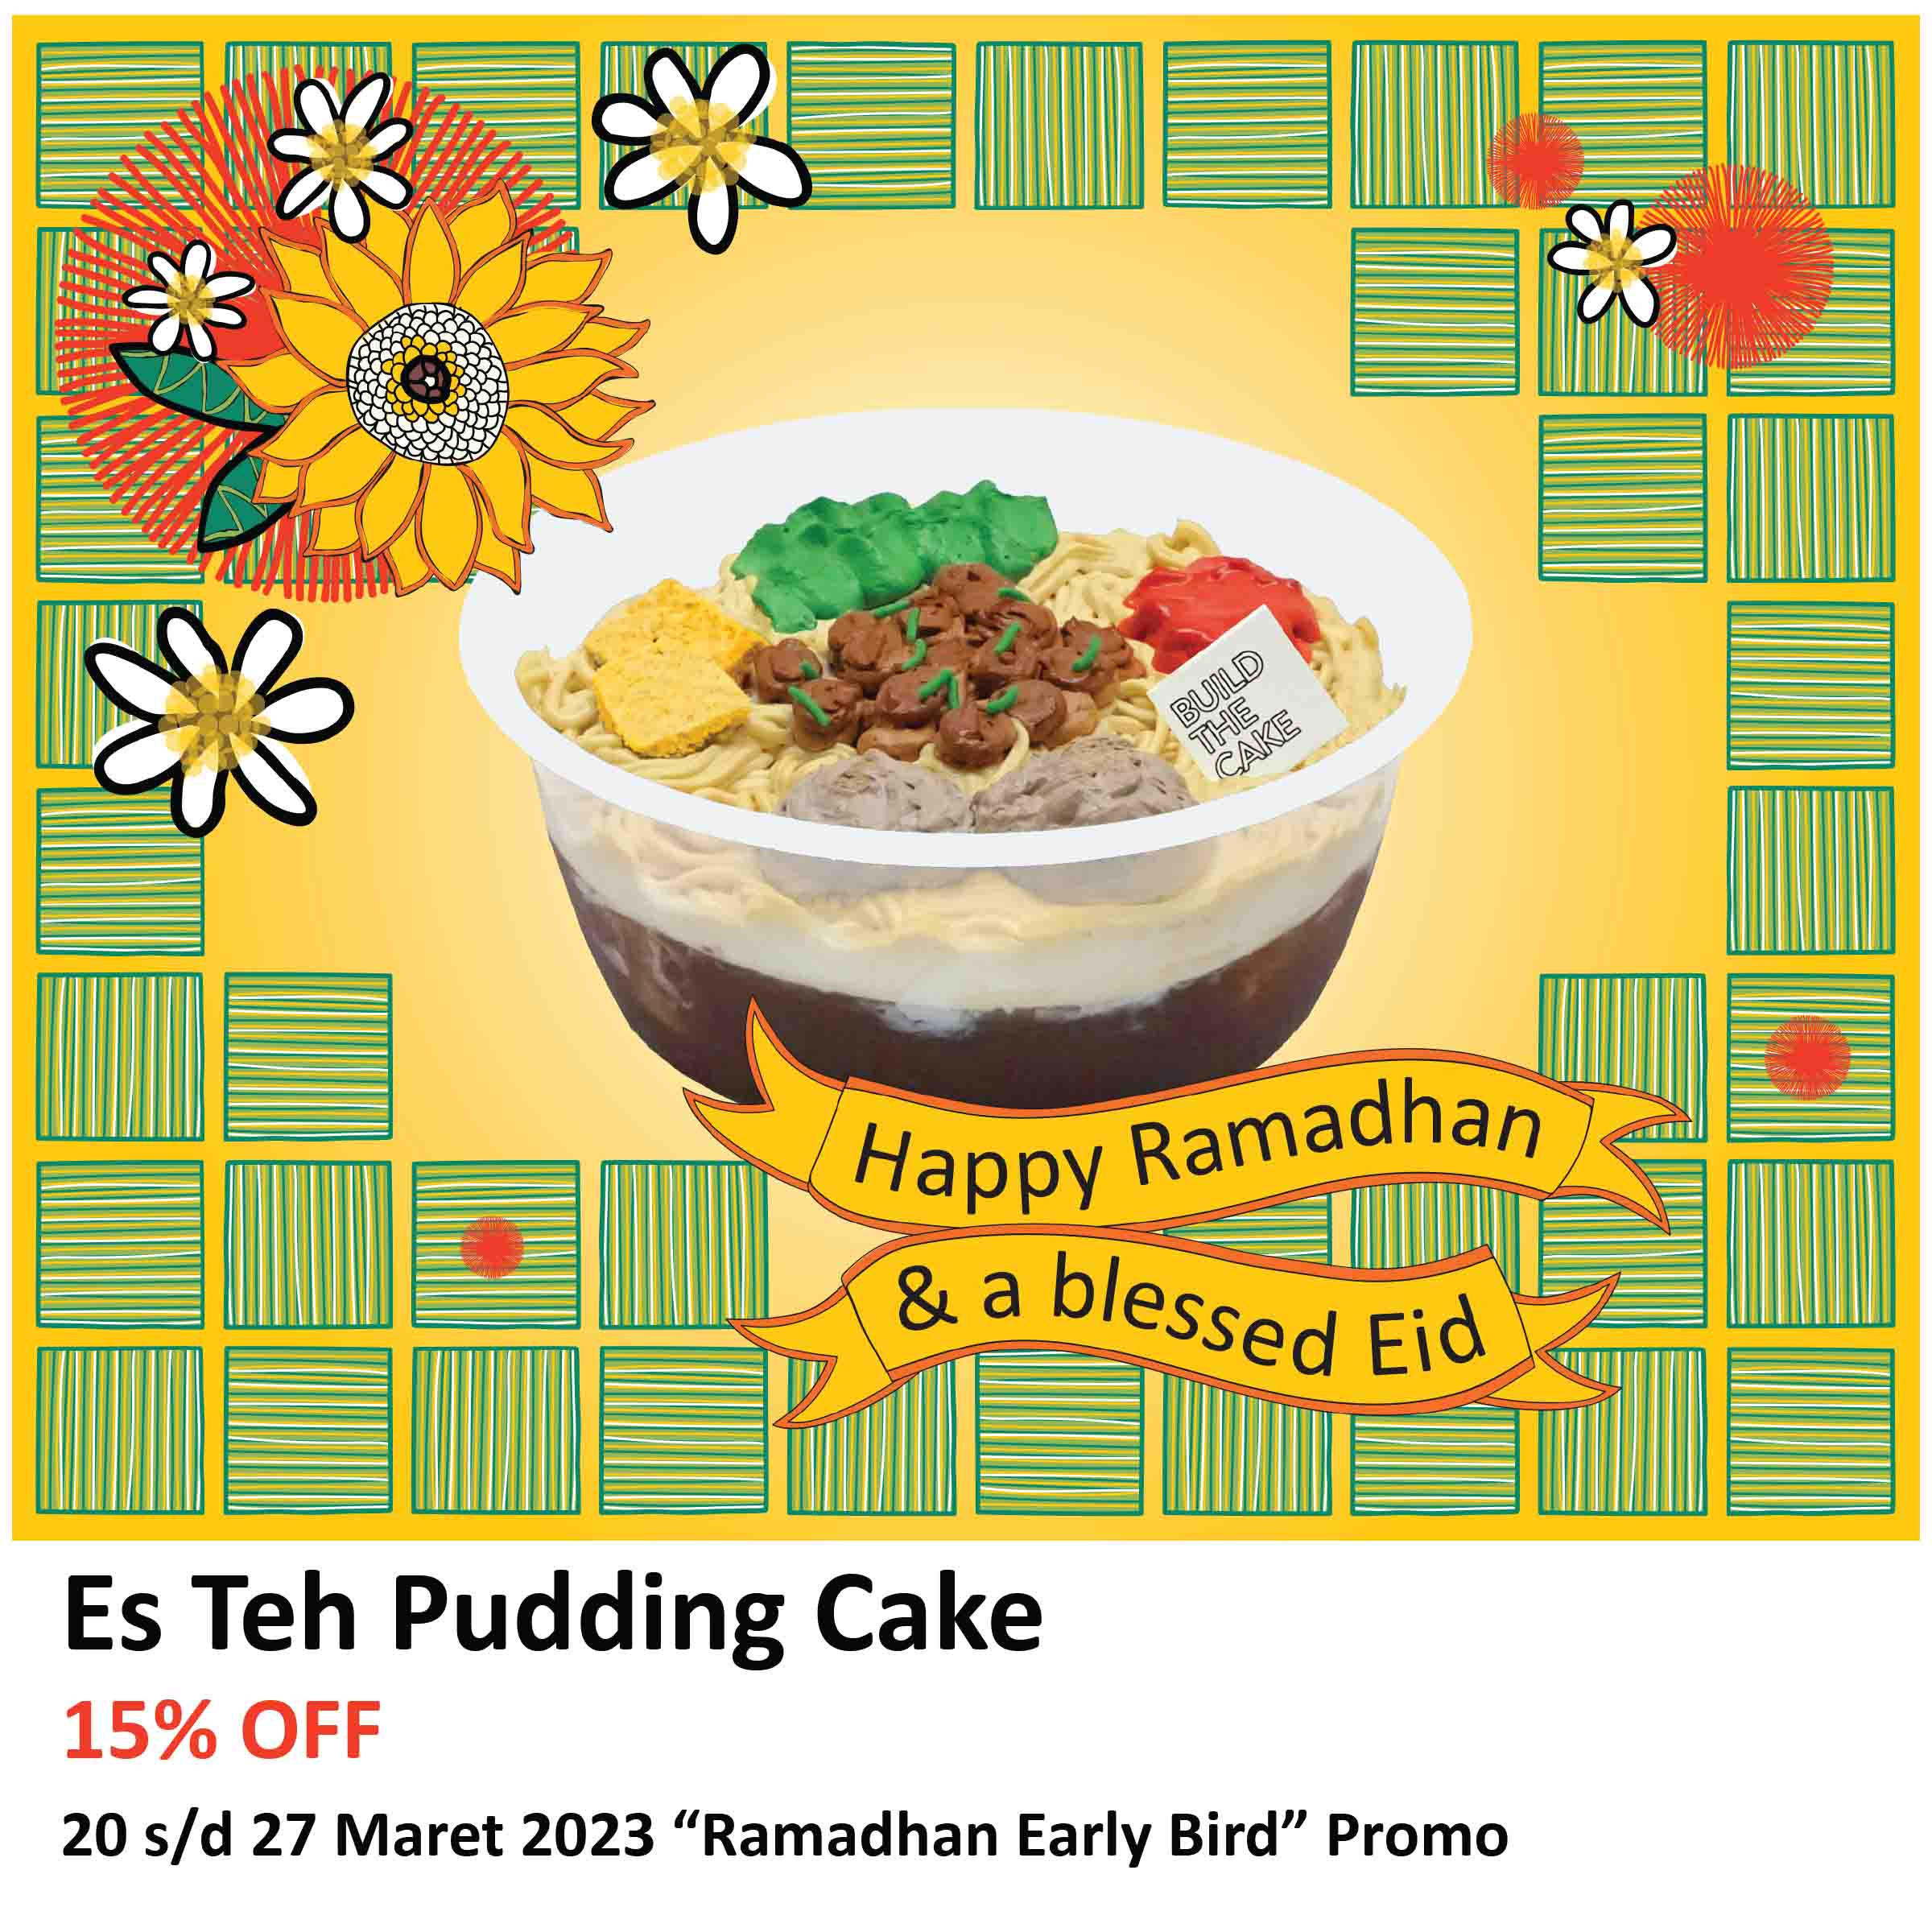 Es Teh Pudding Cake